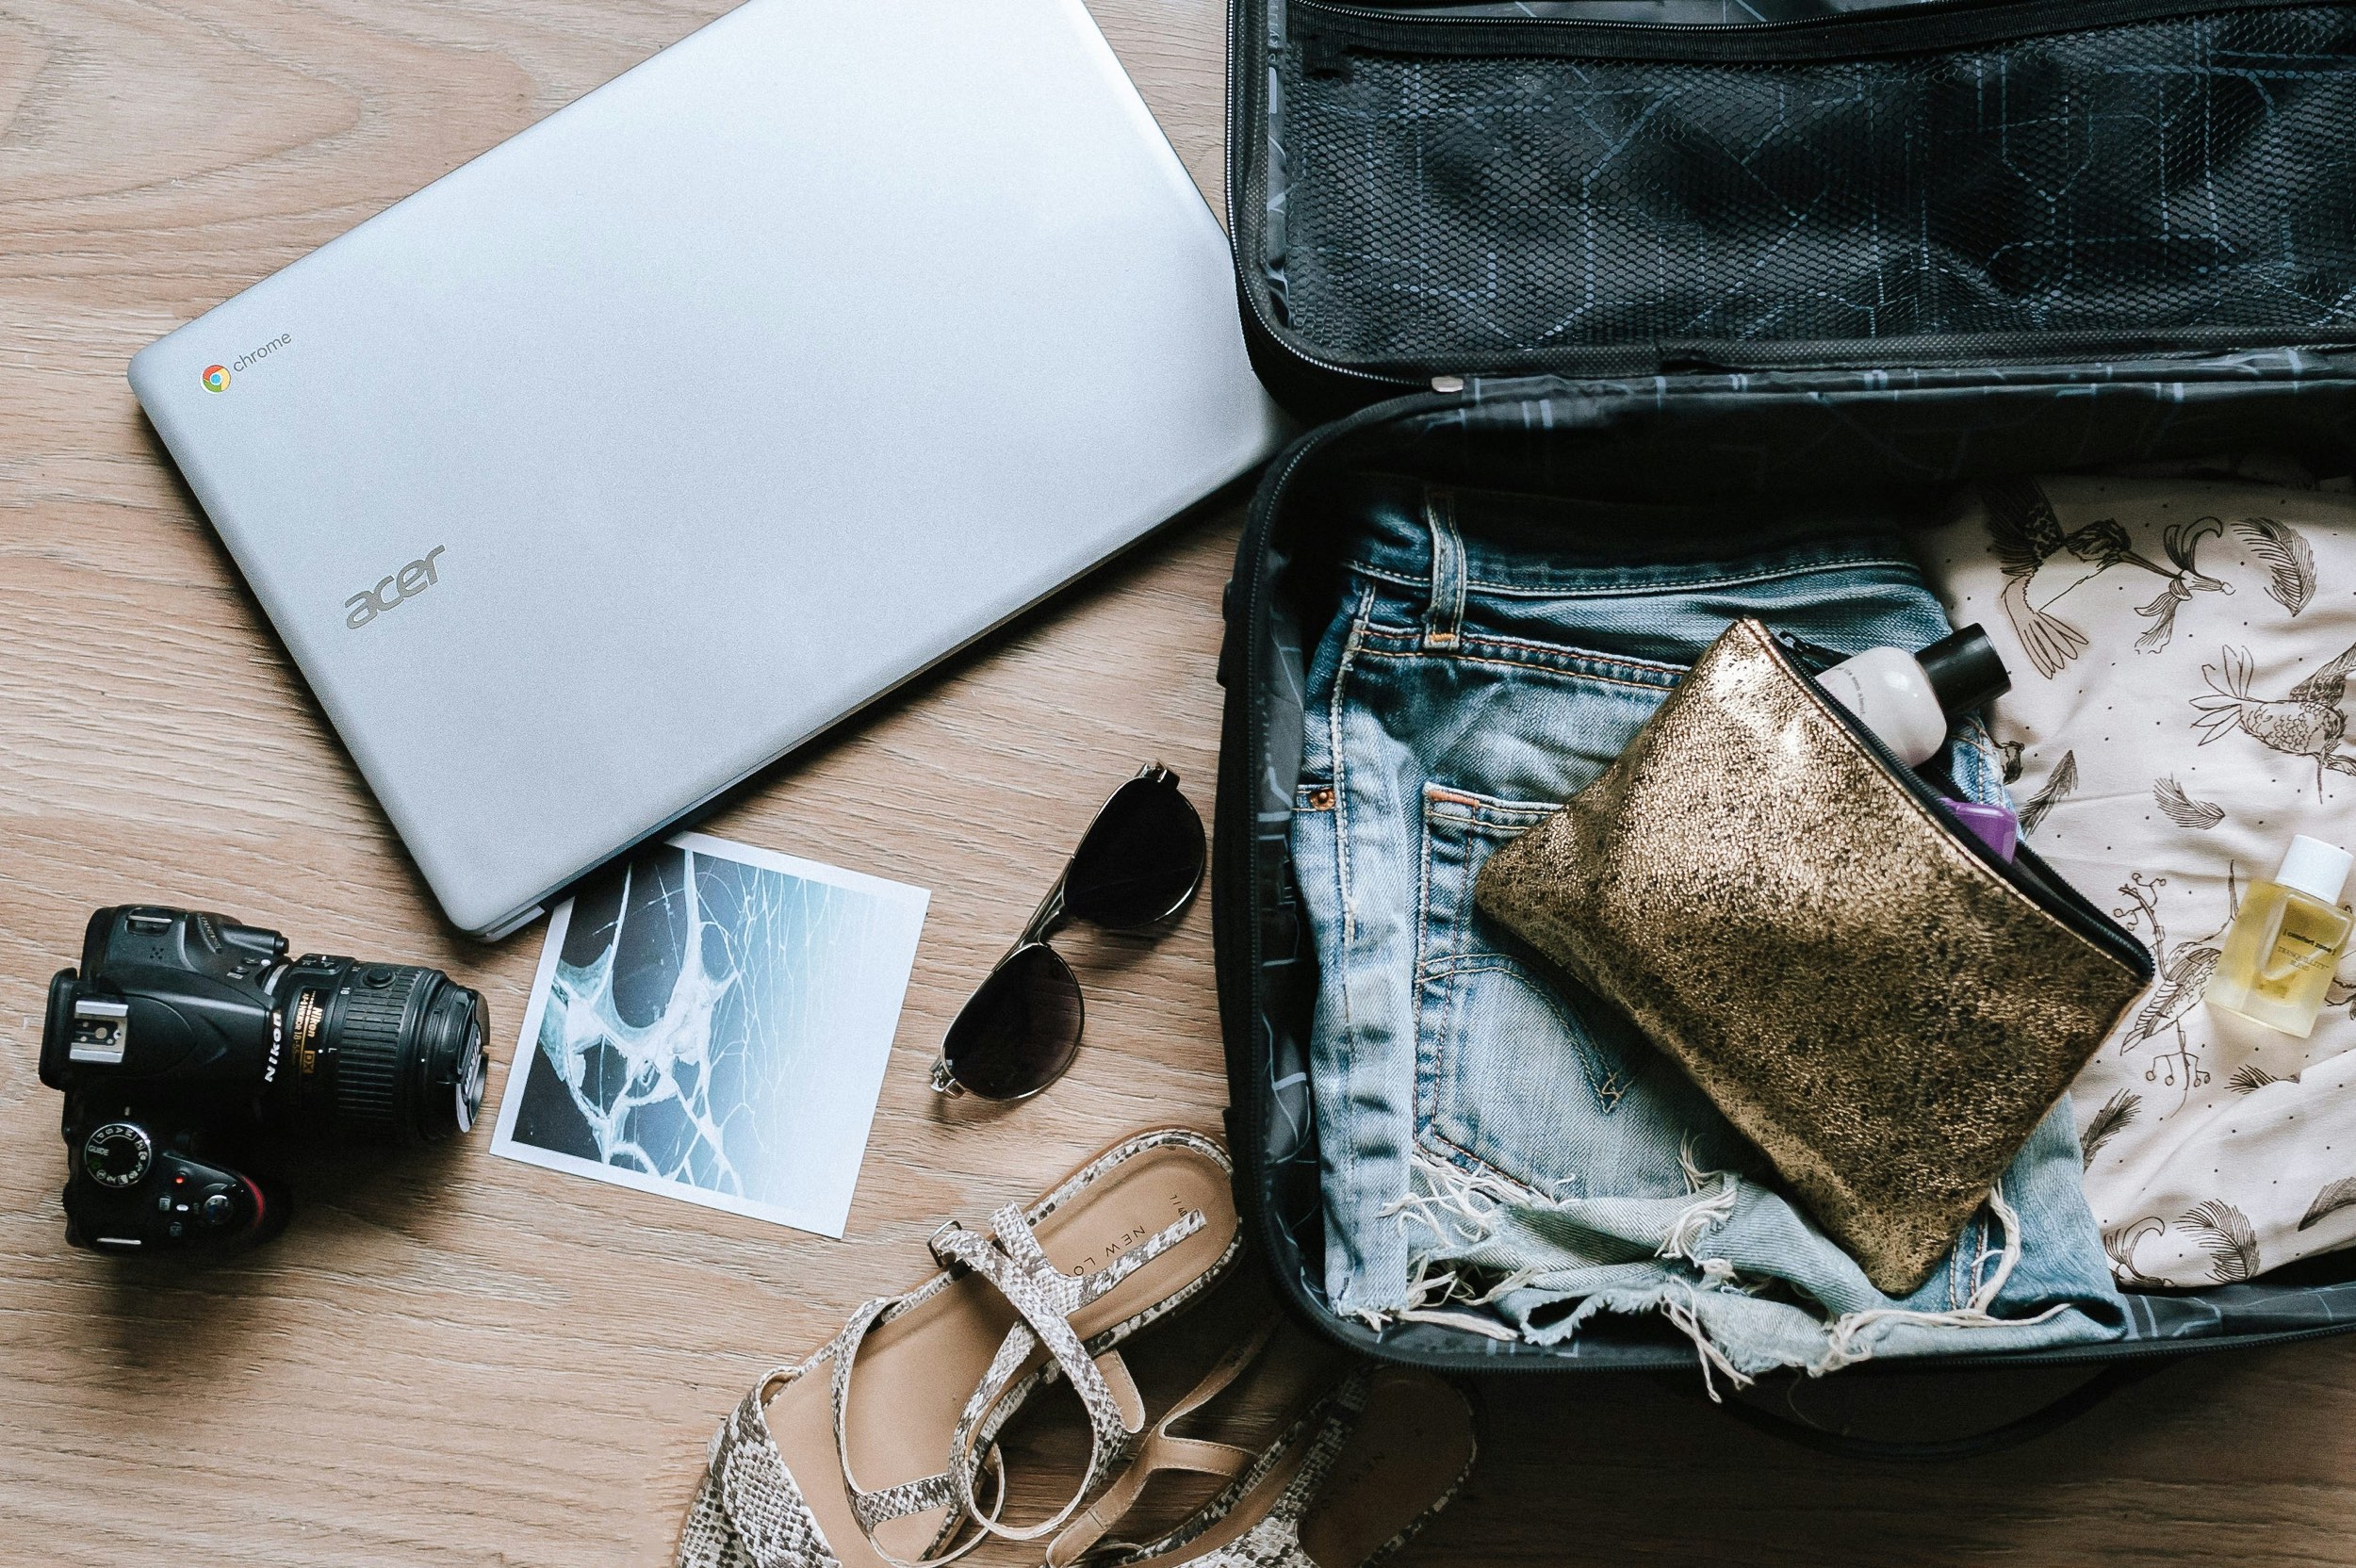 Suitcase, laptop, postcard - Langkawi travel itinerary